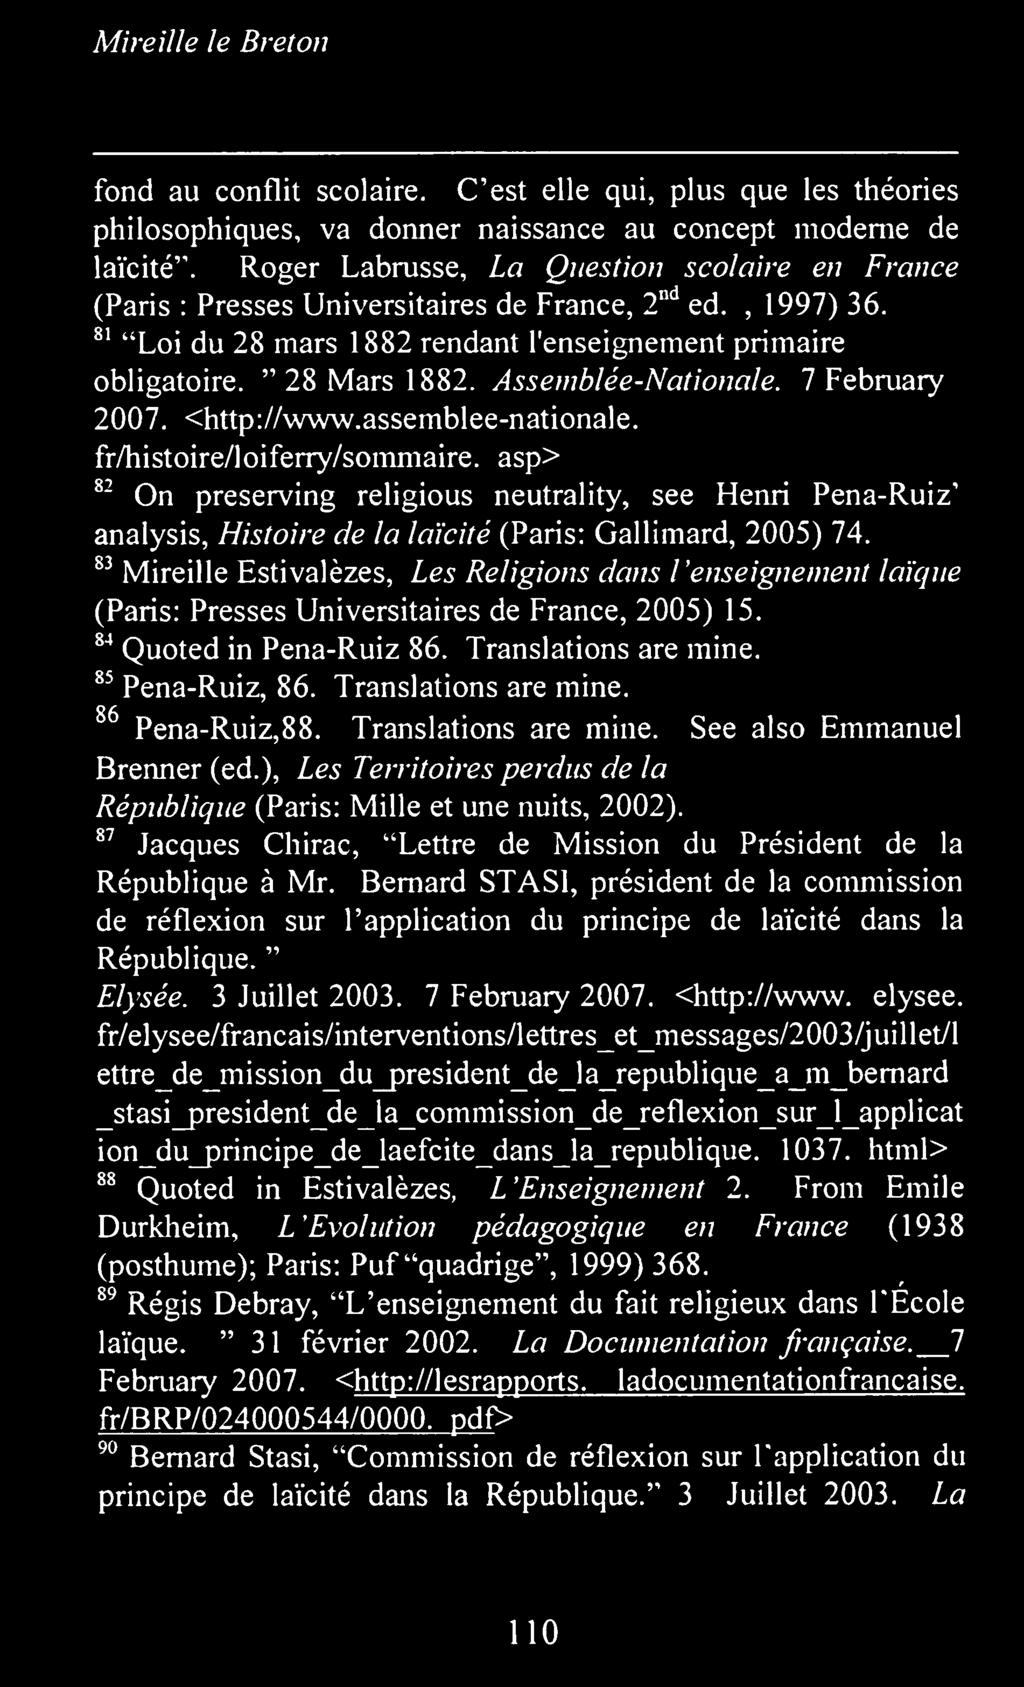 83 Mireille Estivalezes, Les Religions dans l'enseignement laique (Paris: Presses Universitaires de France, 2005) 15. 84 Quoted in Pena-Ruiz 86. Translations are mine. 85 Pena-Ruiz, 86.